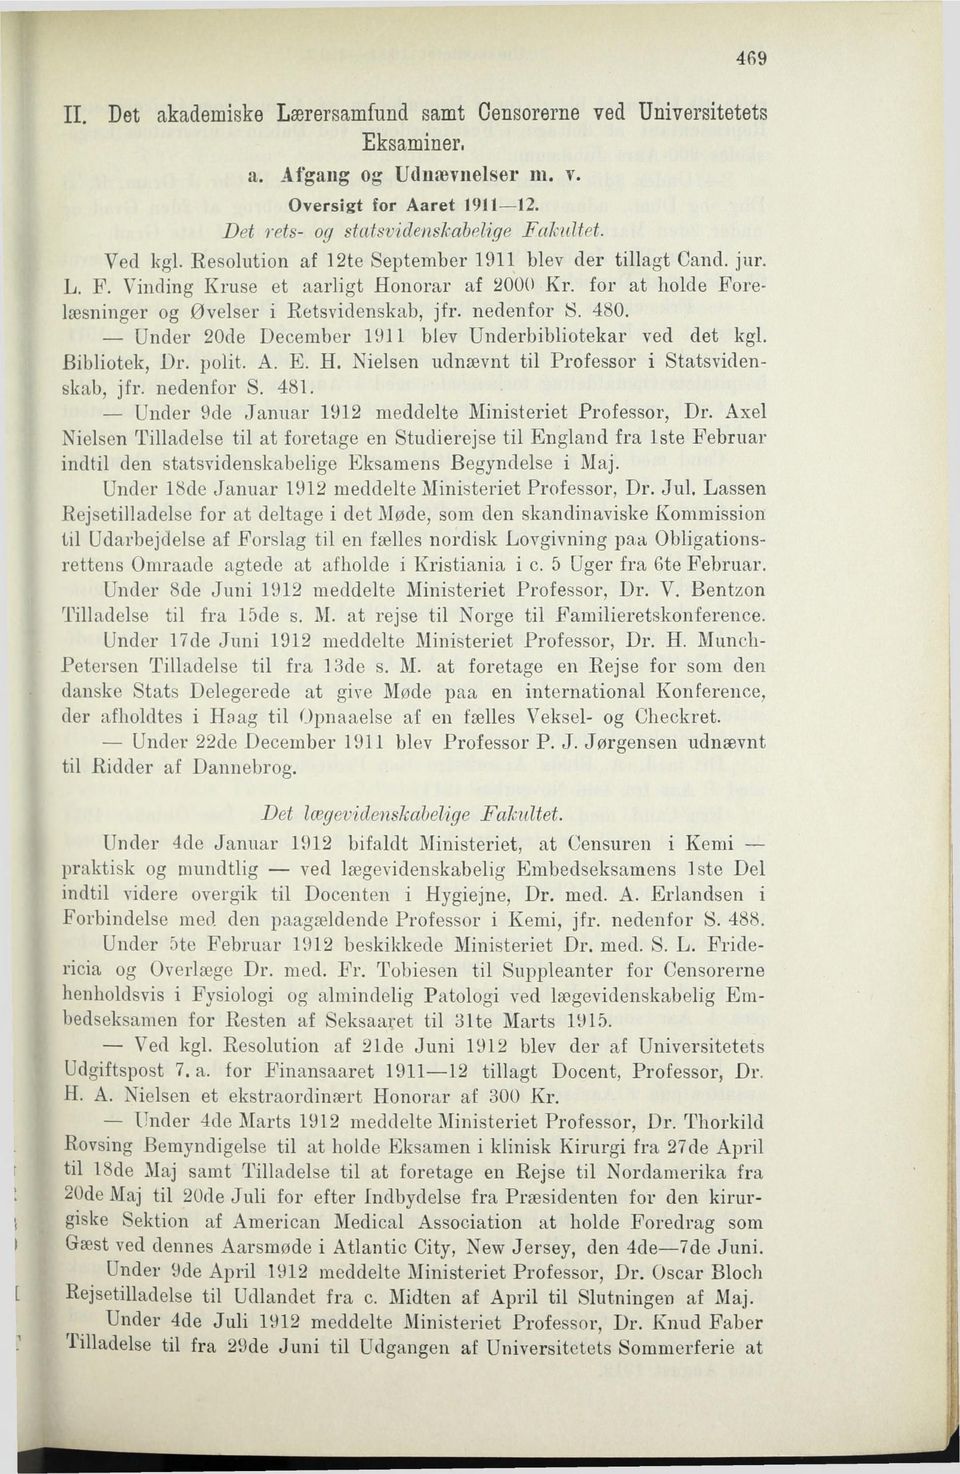 Under 20de December 1911 blev Underbibliotekar ved det kgl. Bibliotek, Dr. polit. A. E. H. Nielsen udnævnt til Professor i Statsvidenskab, jfr. nedenfor S. 481.